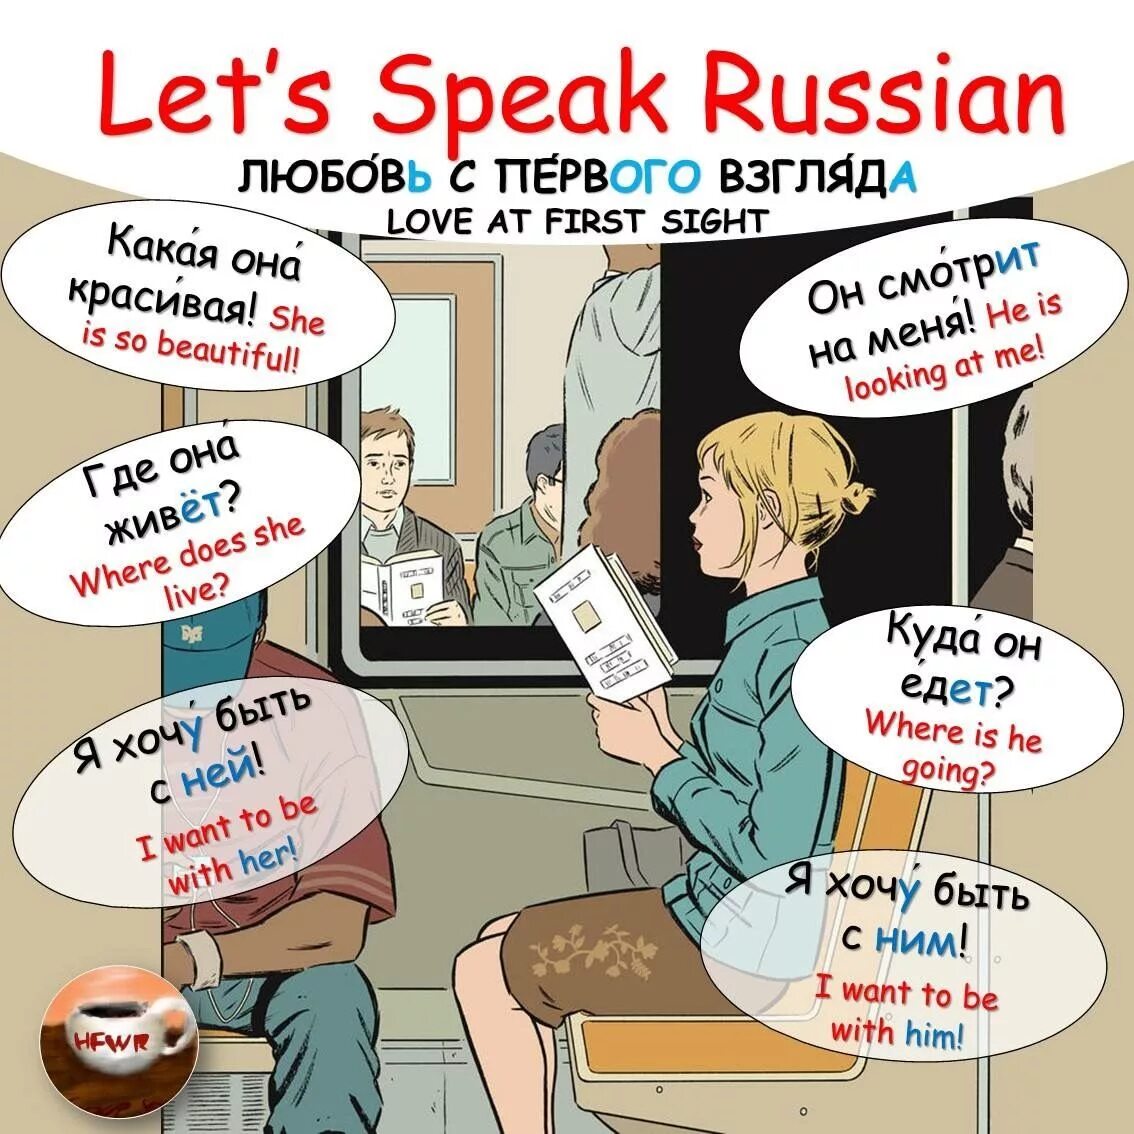 He speak russian. Speak Russian. I speak Russian.